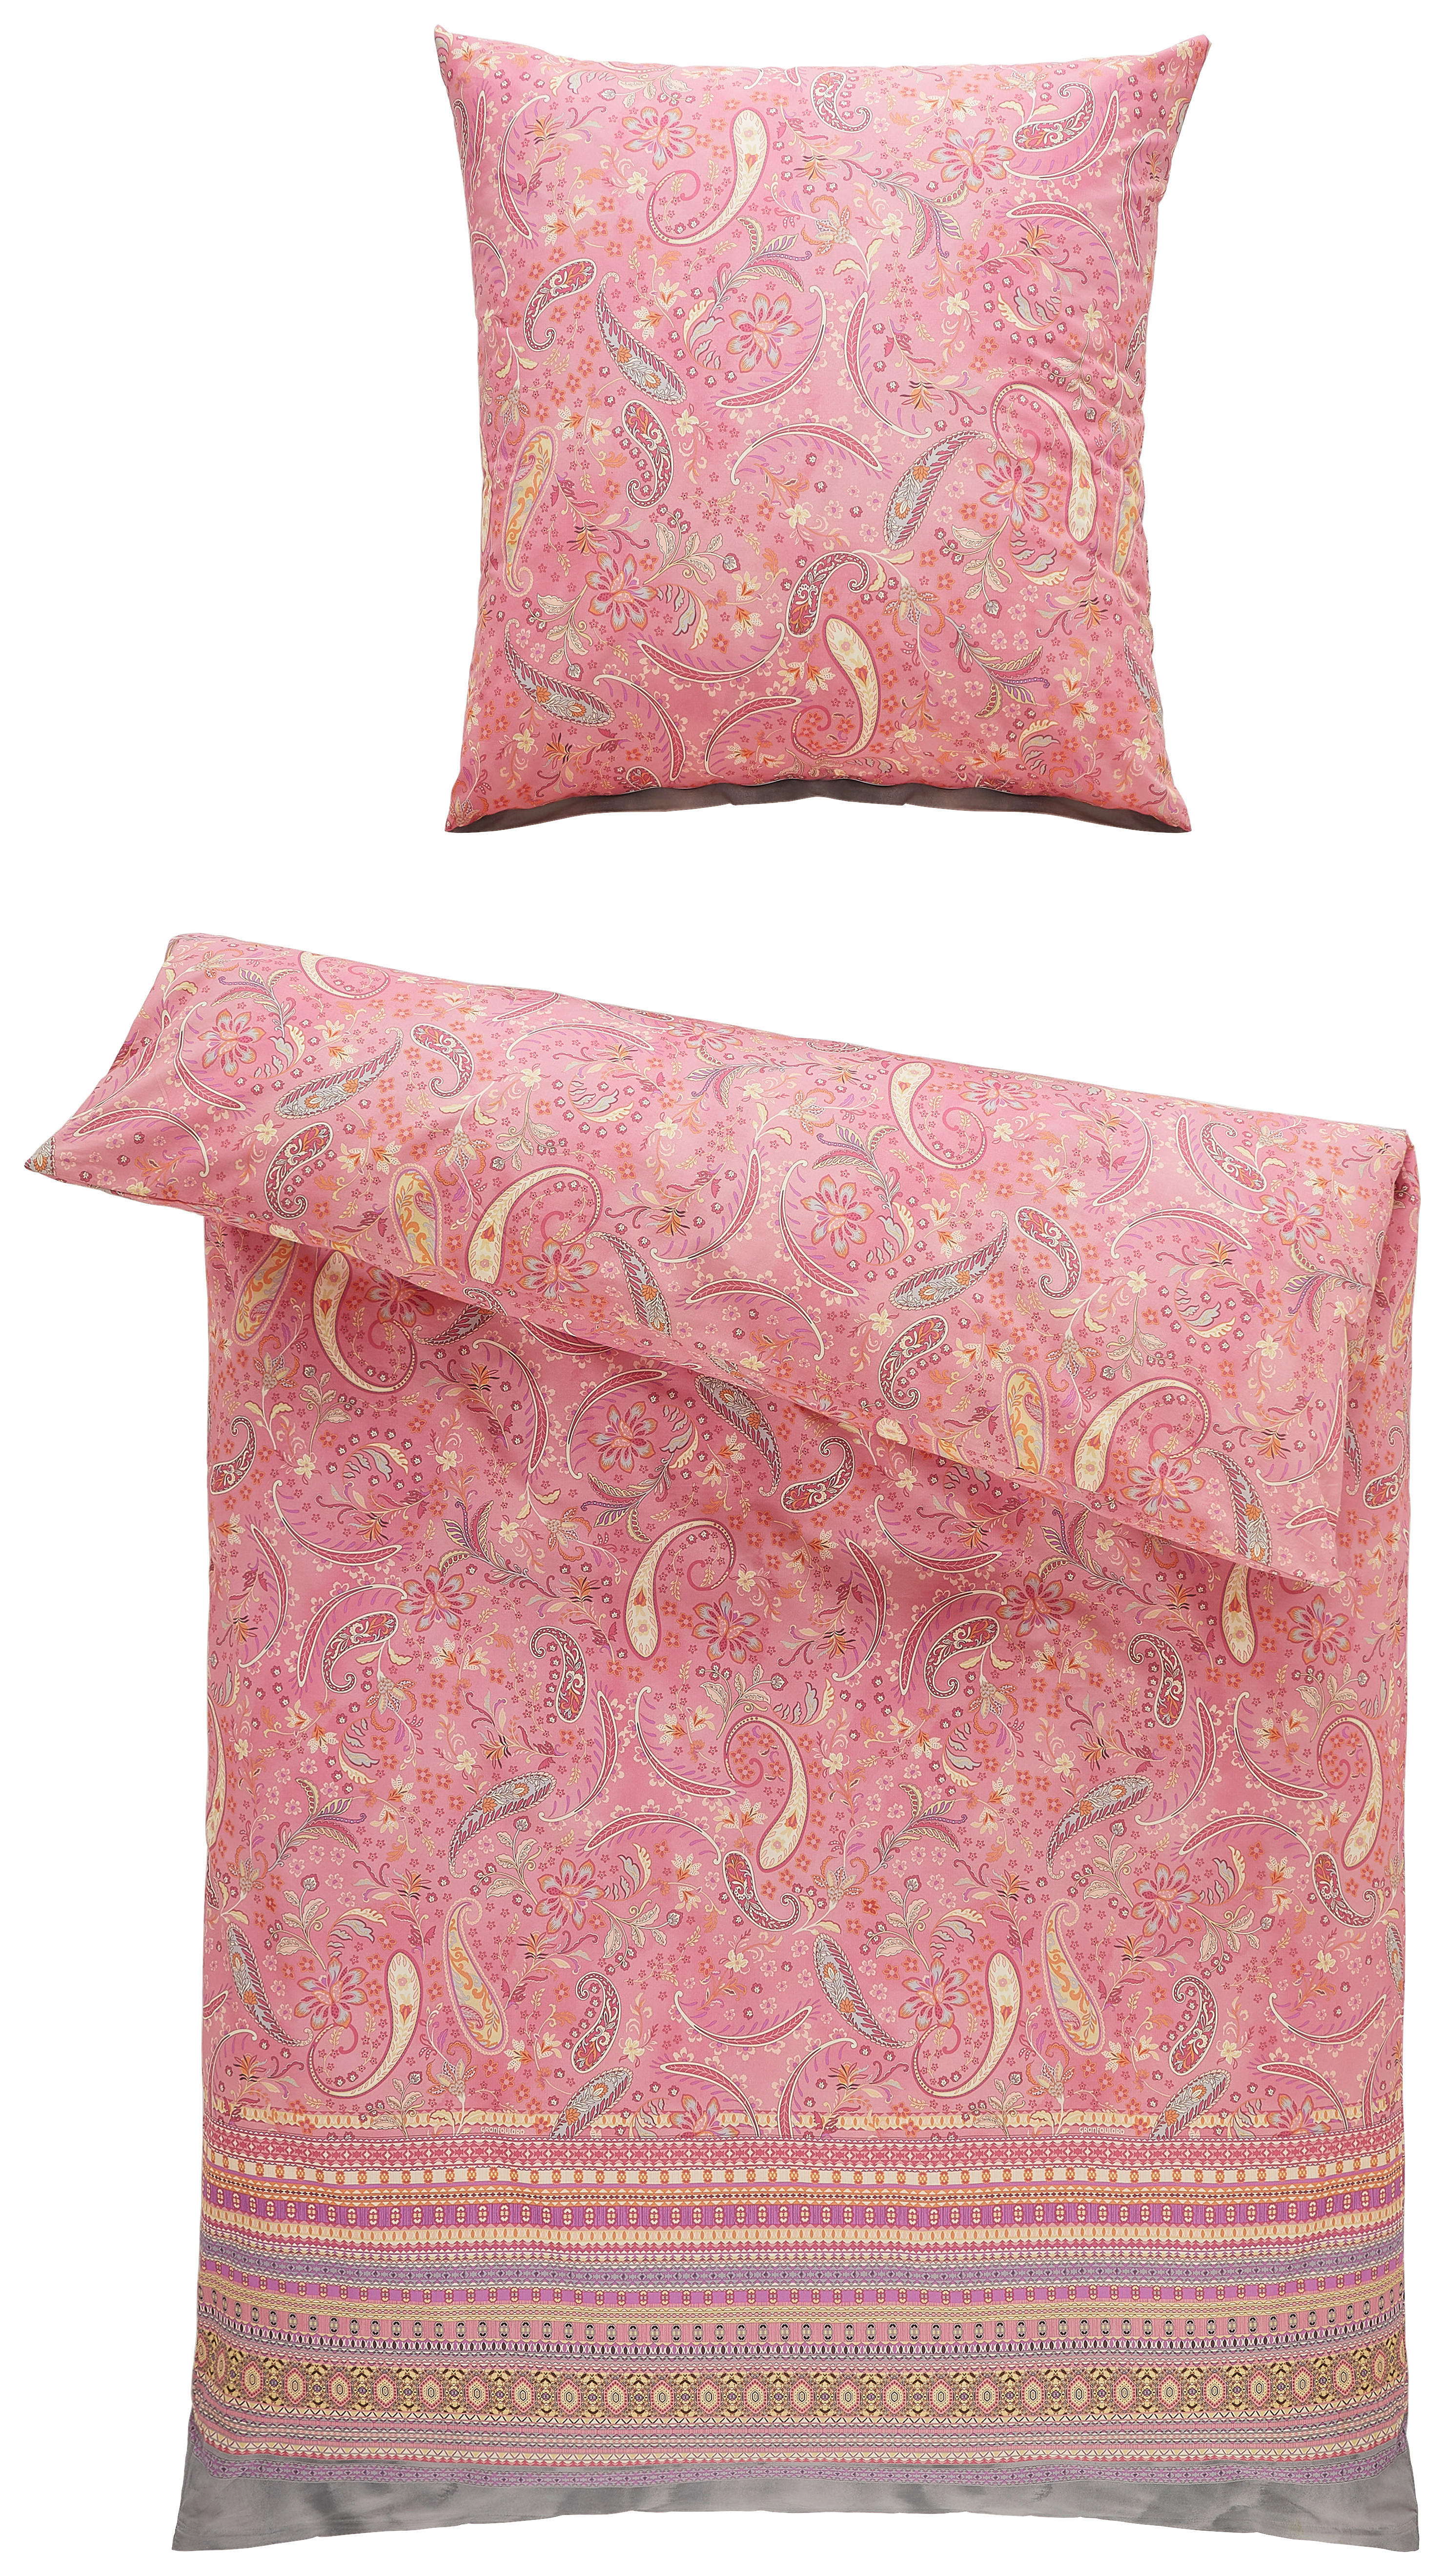 BETTWÄSCHE Burano  - Pink, LIFESTYLE, Textil (155/220cm) - Bassetti